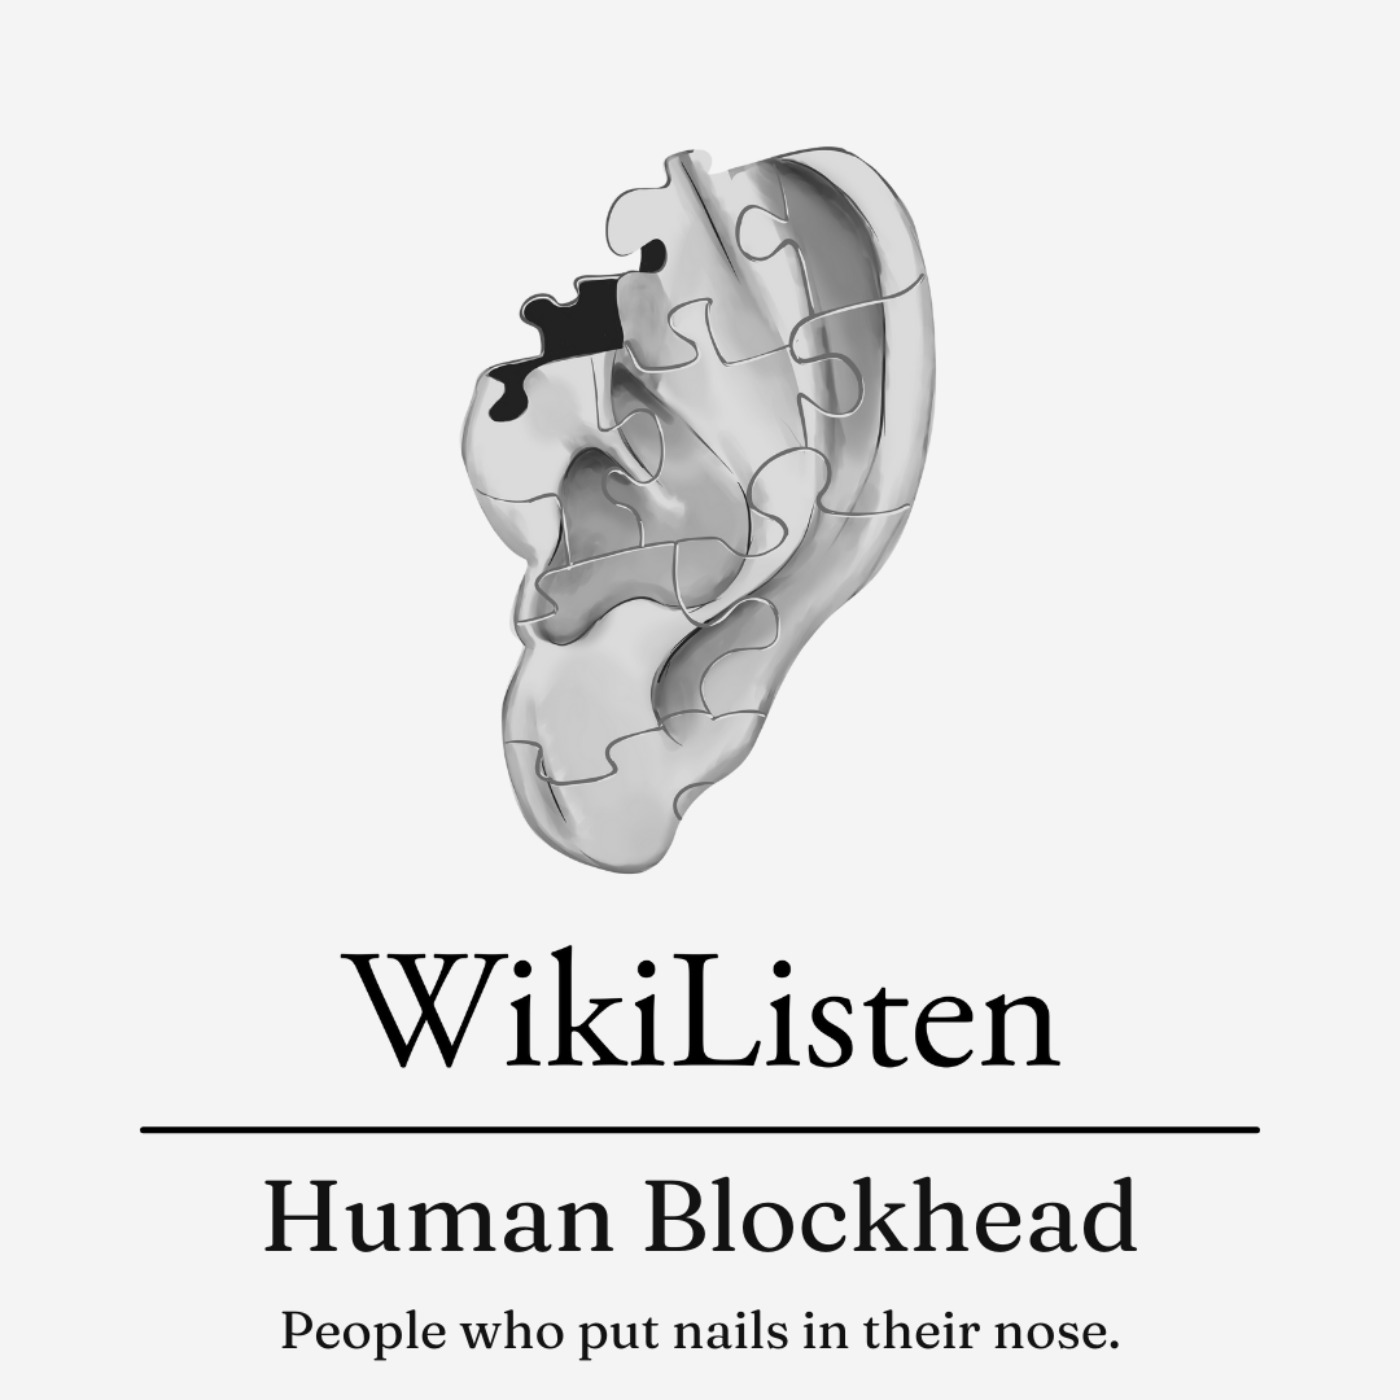 Human Blockhead